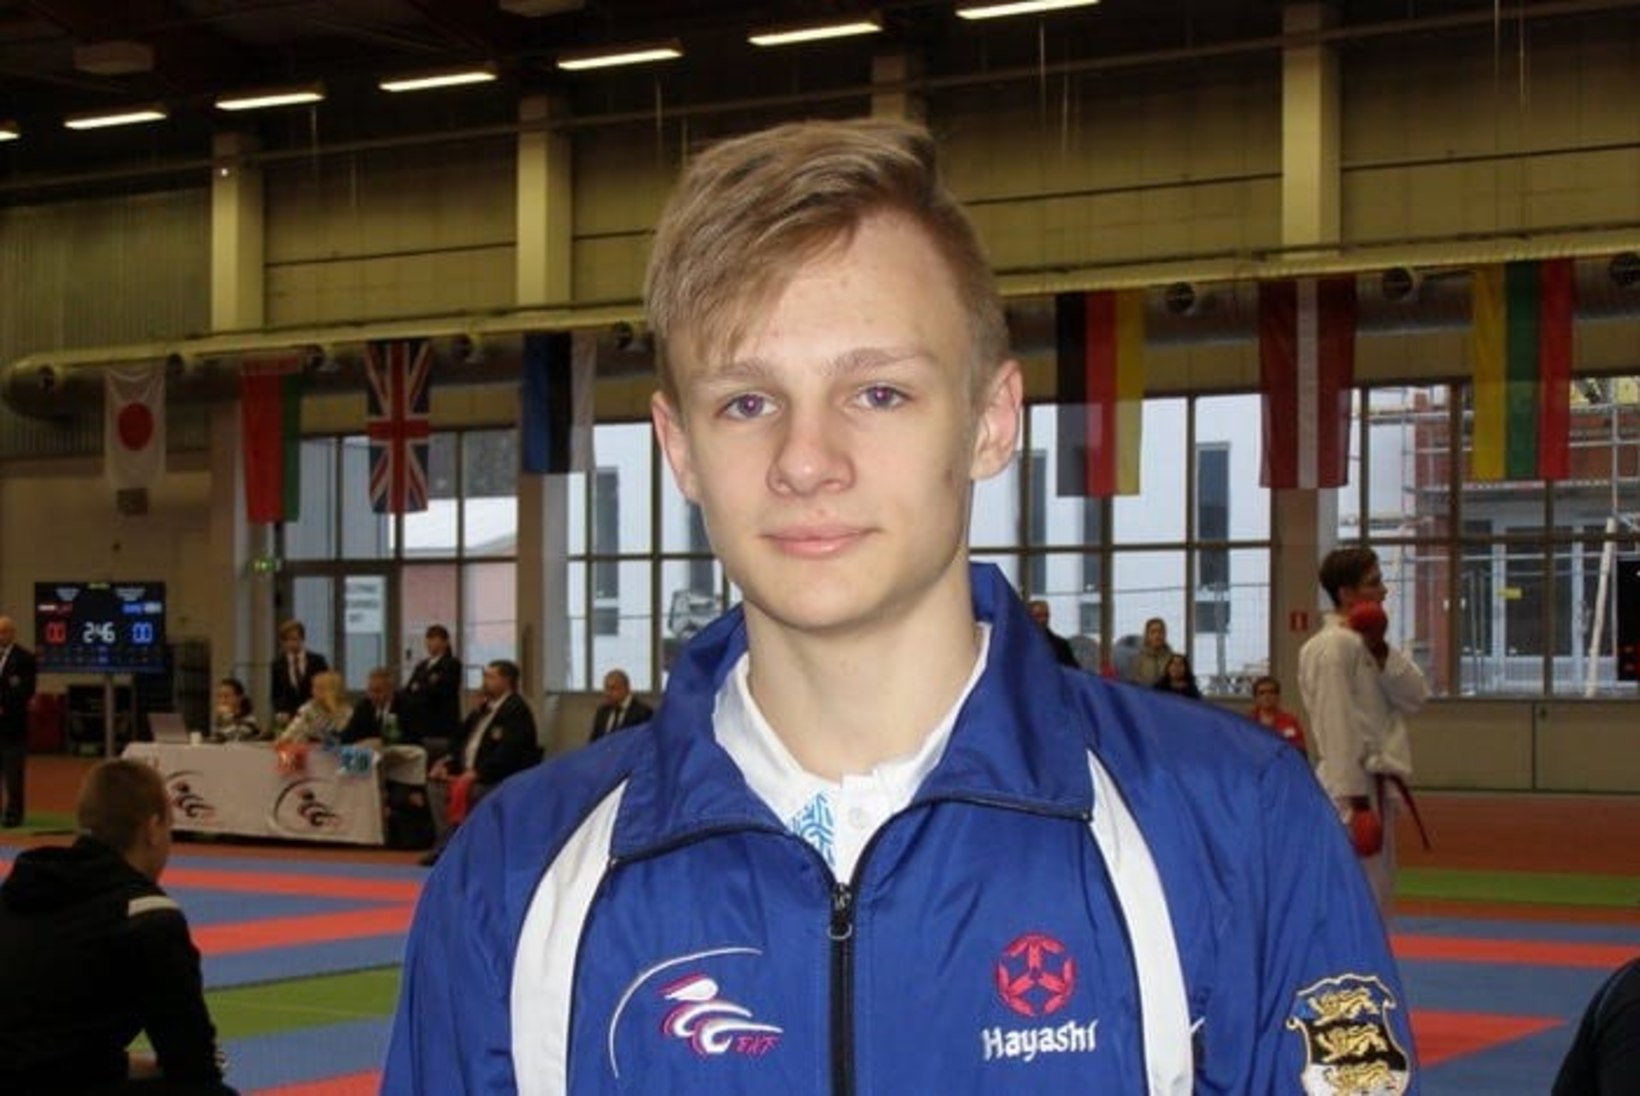 Eesti karateka pälvis Hiinas kolmanda koha